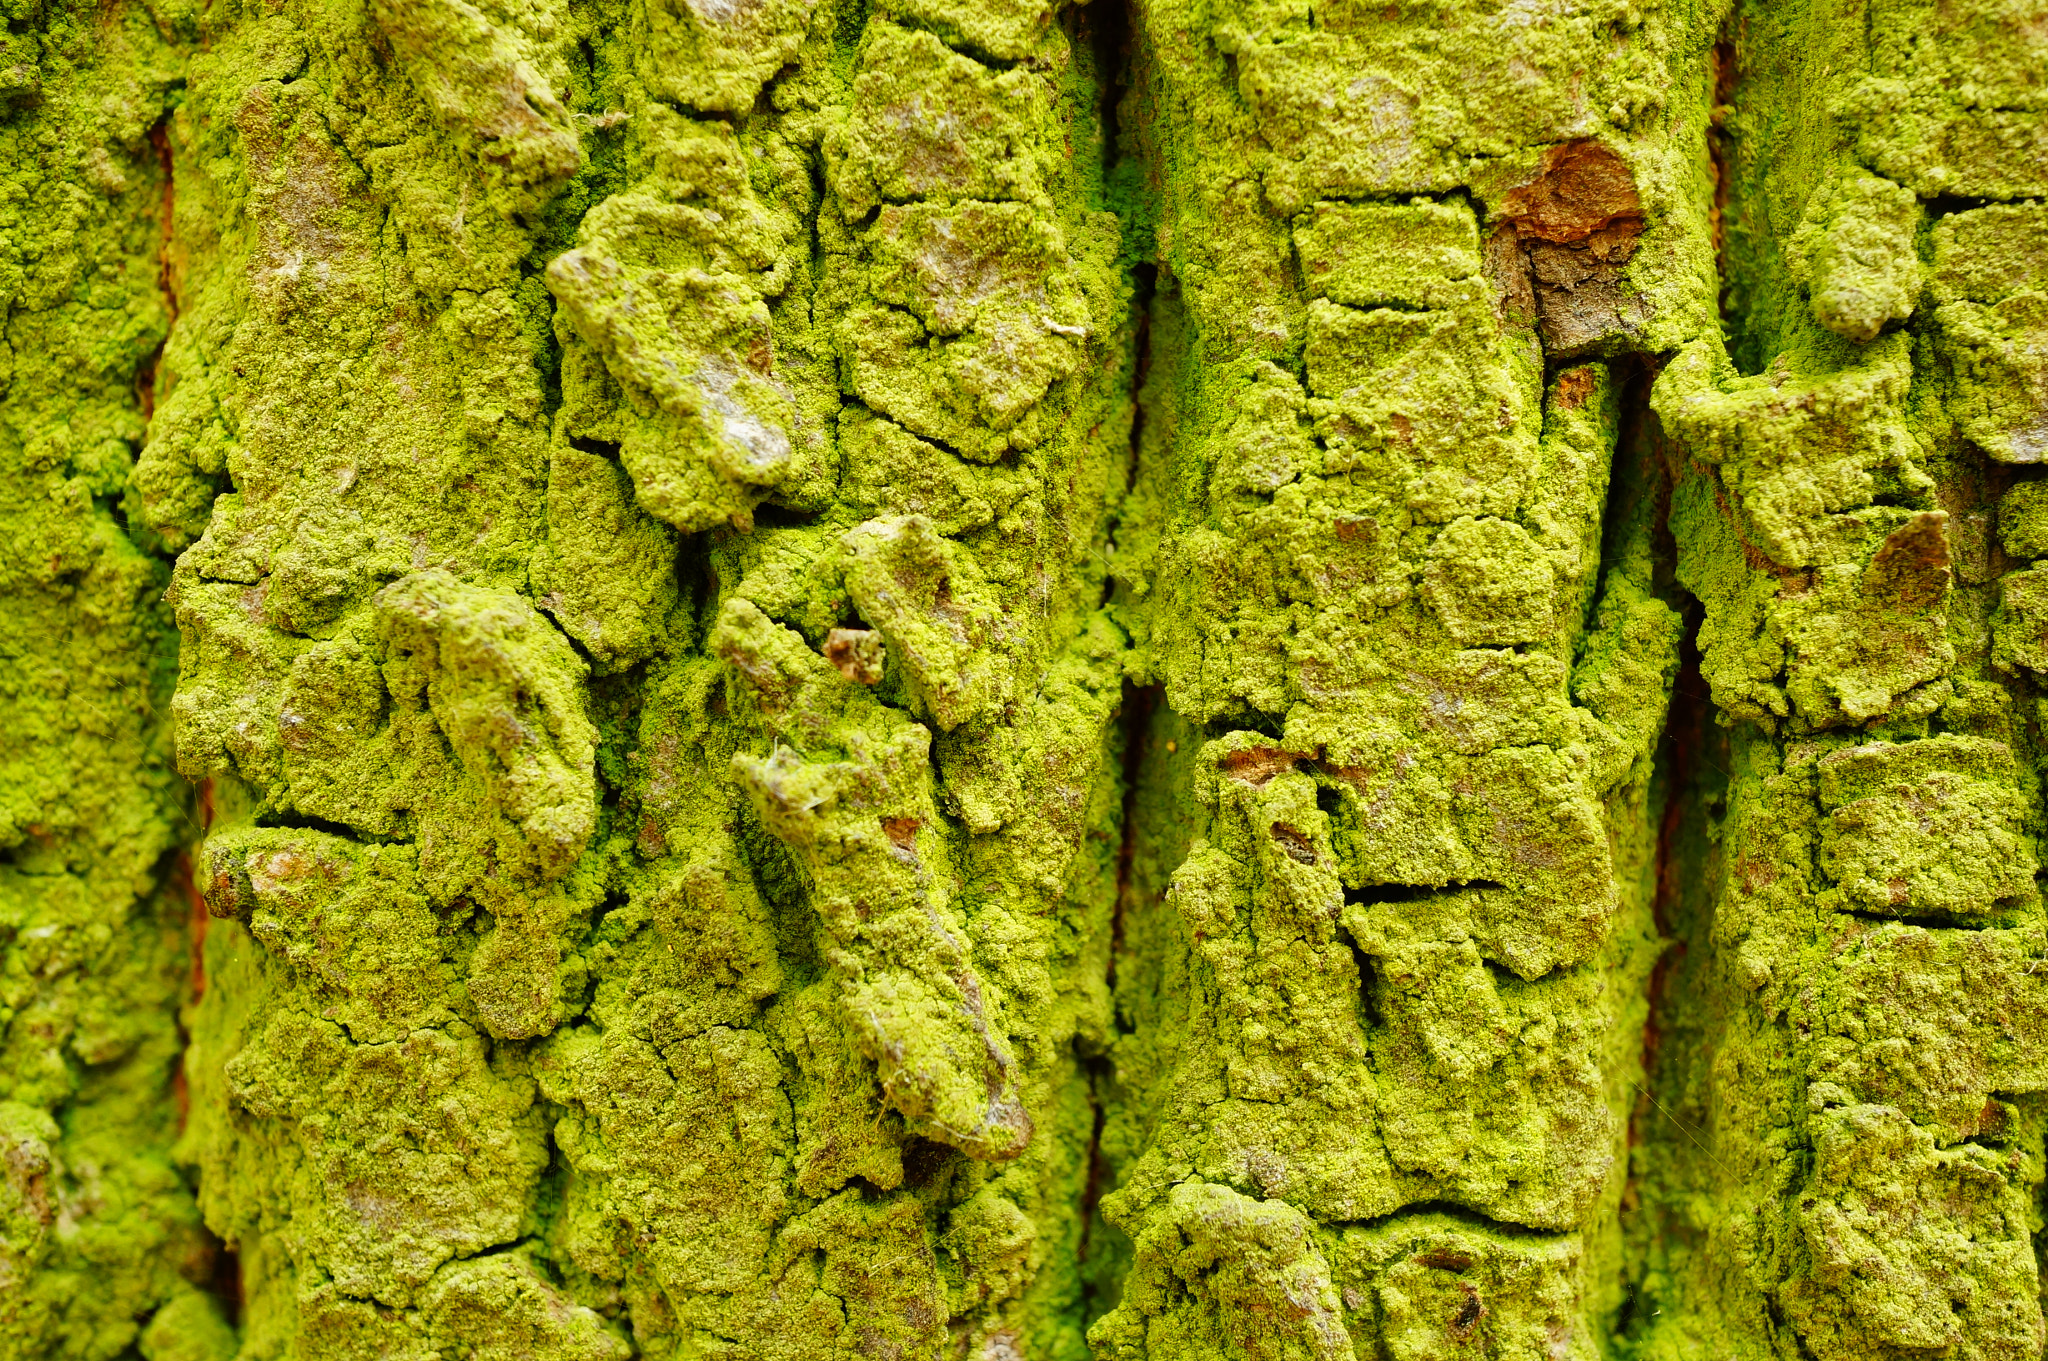 Sony Alpha NEX-6 + Sony E 30mm F3.5 Macro sample photo. Close-up of tree bark photography